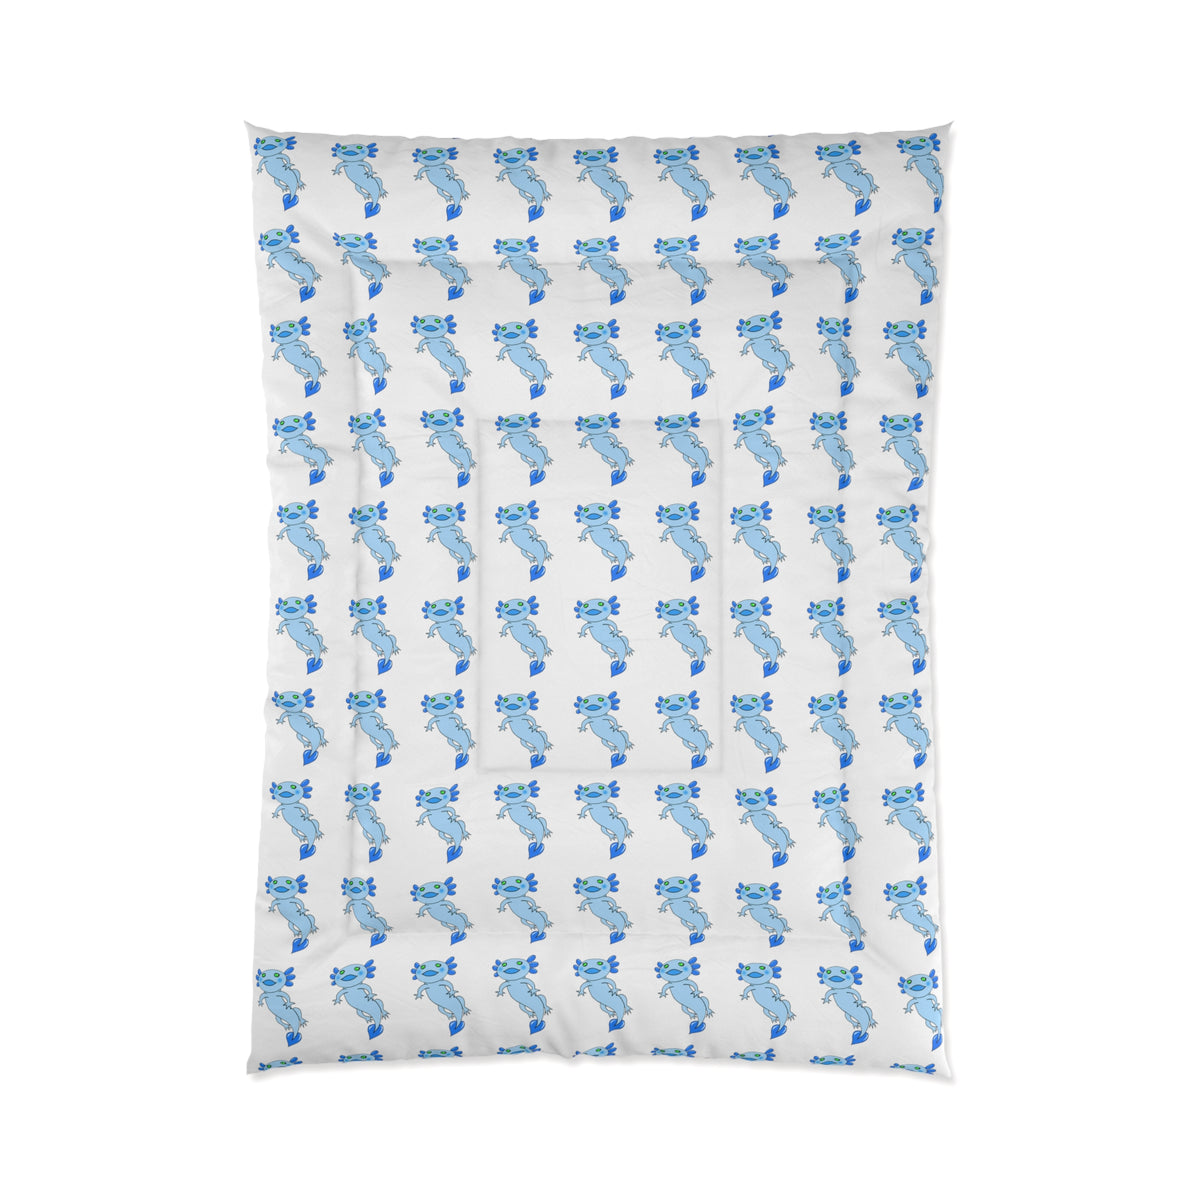 Blue Axolotl Comforter - Kawaii Esquire